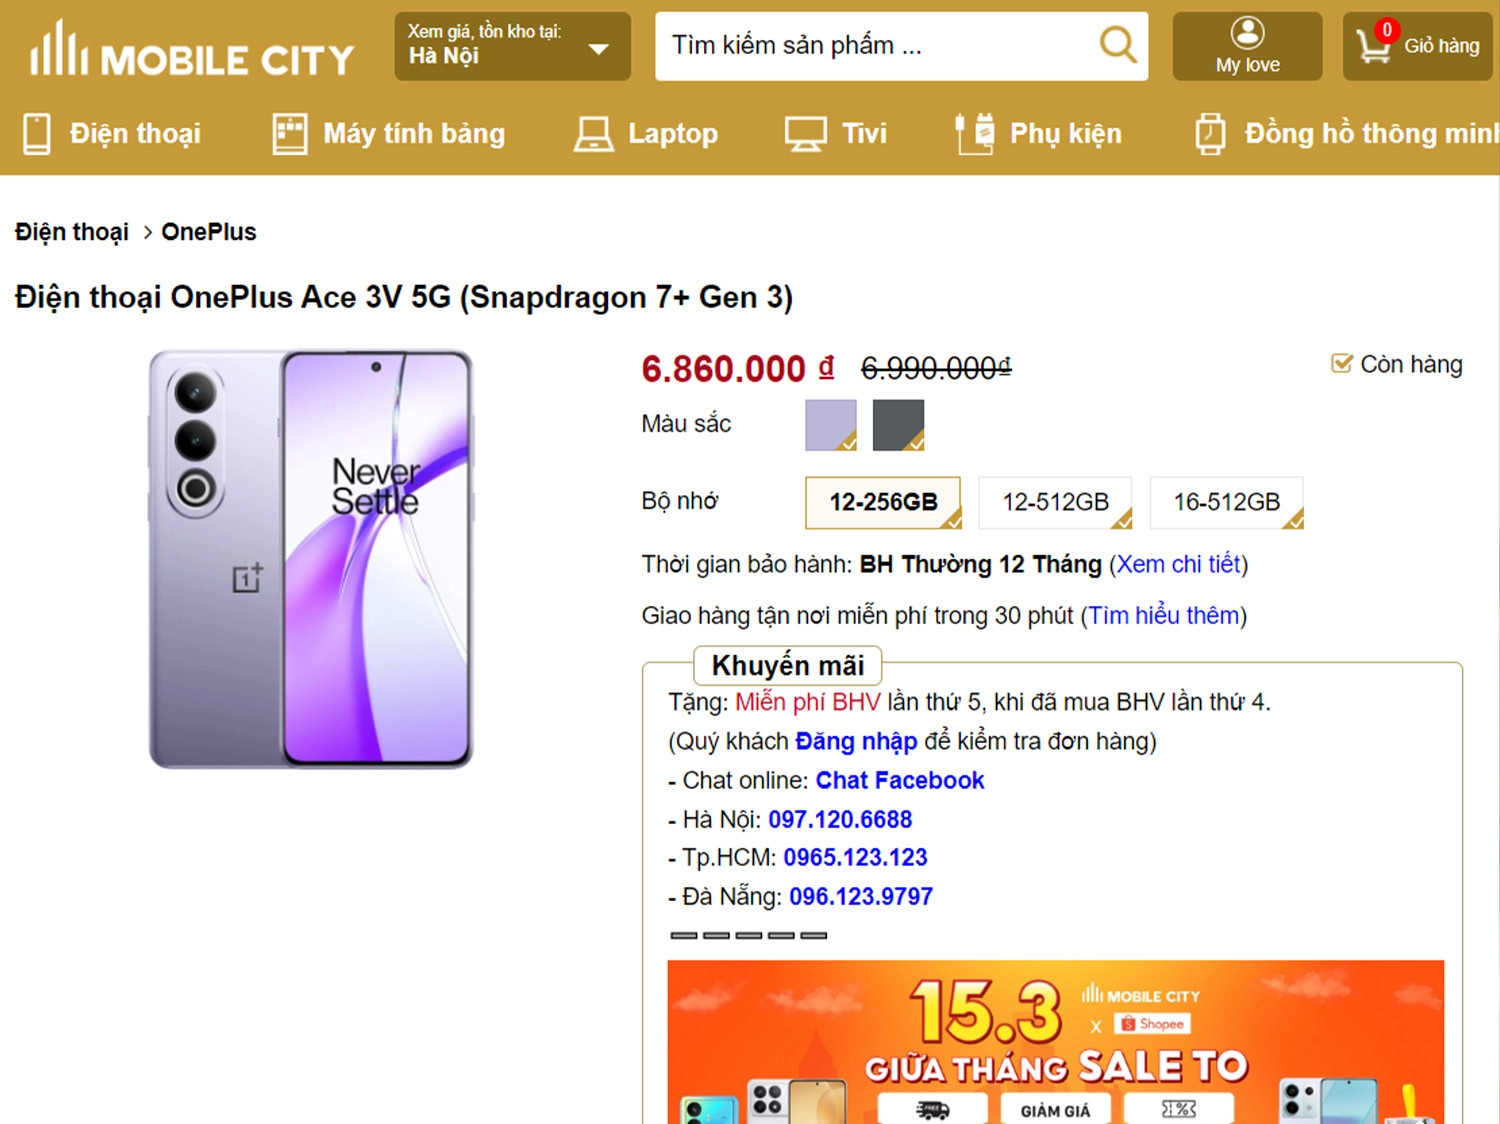 Thông tin giá bán OnePlus Ace 3V tại MobileCity